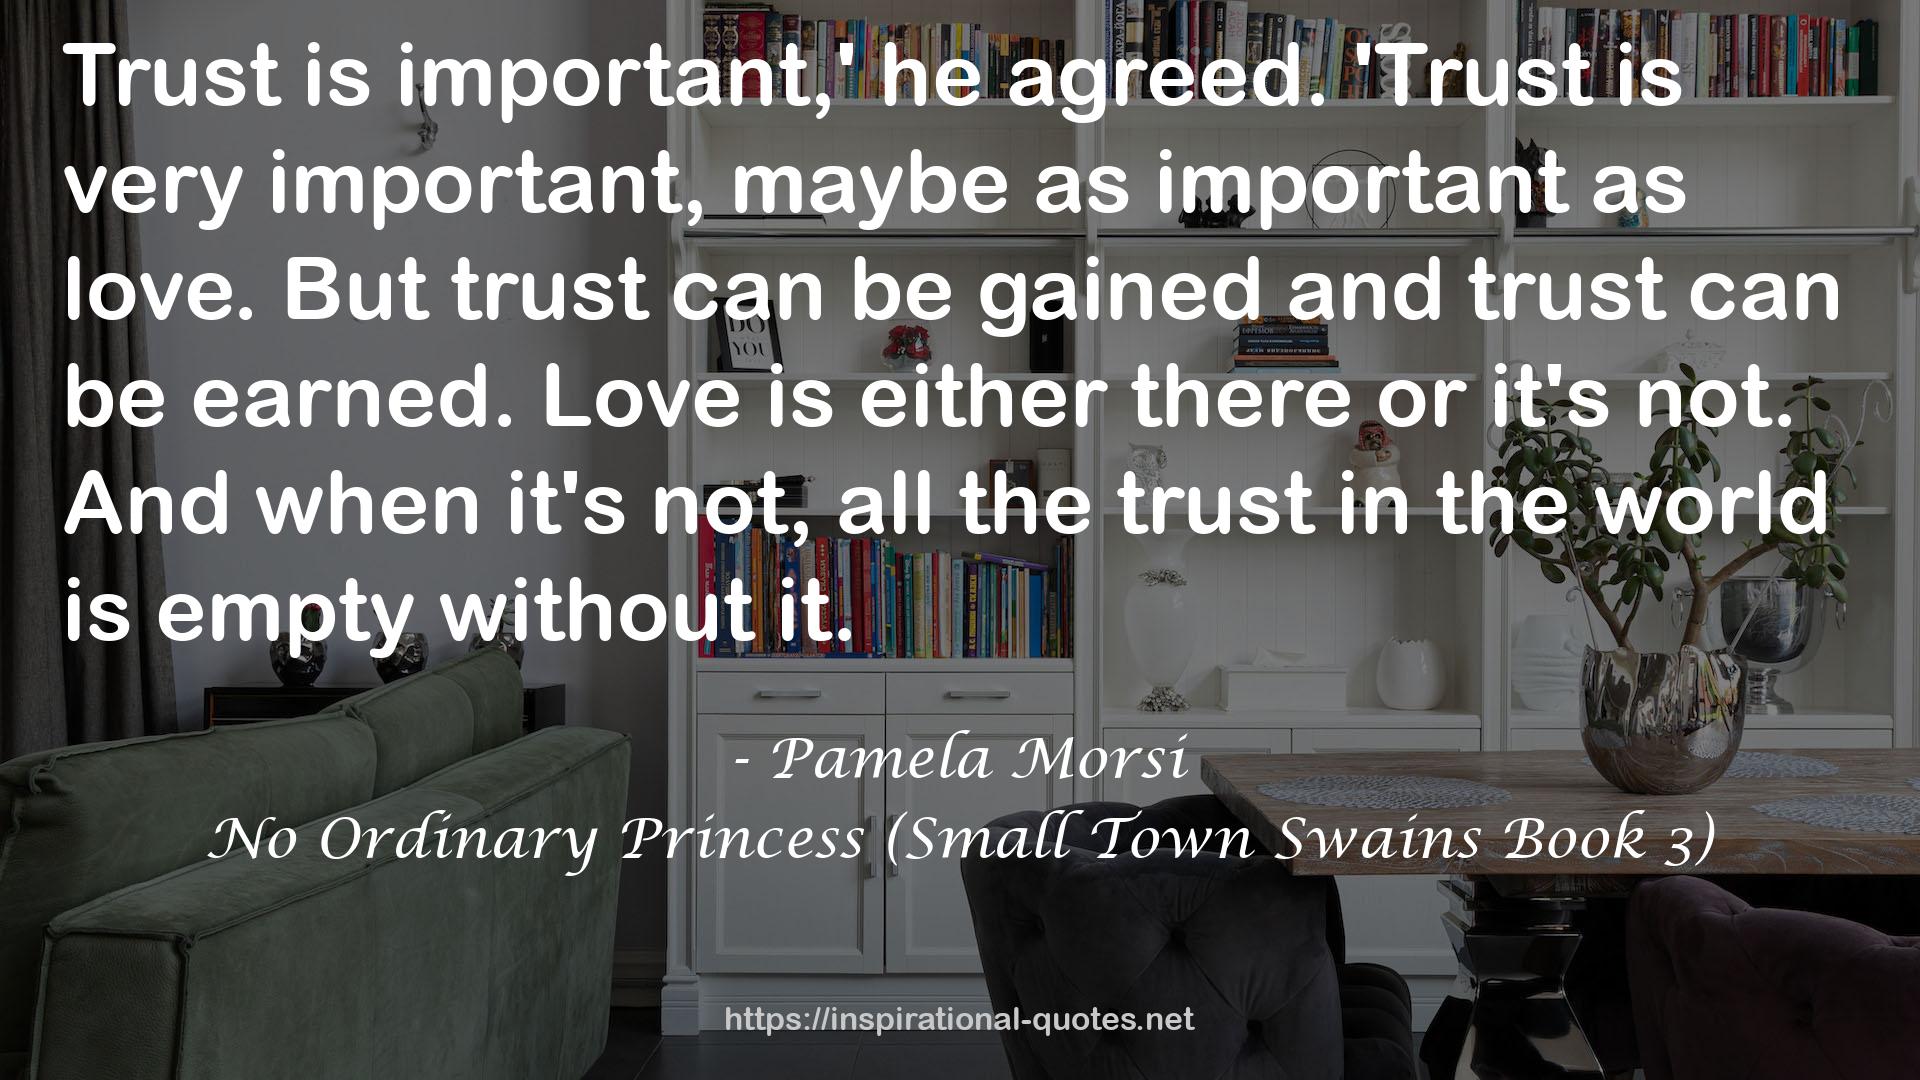 No Ordinary Princess (Small Town Swains Book 3) QUOTES